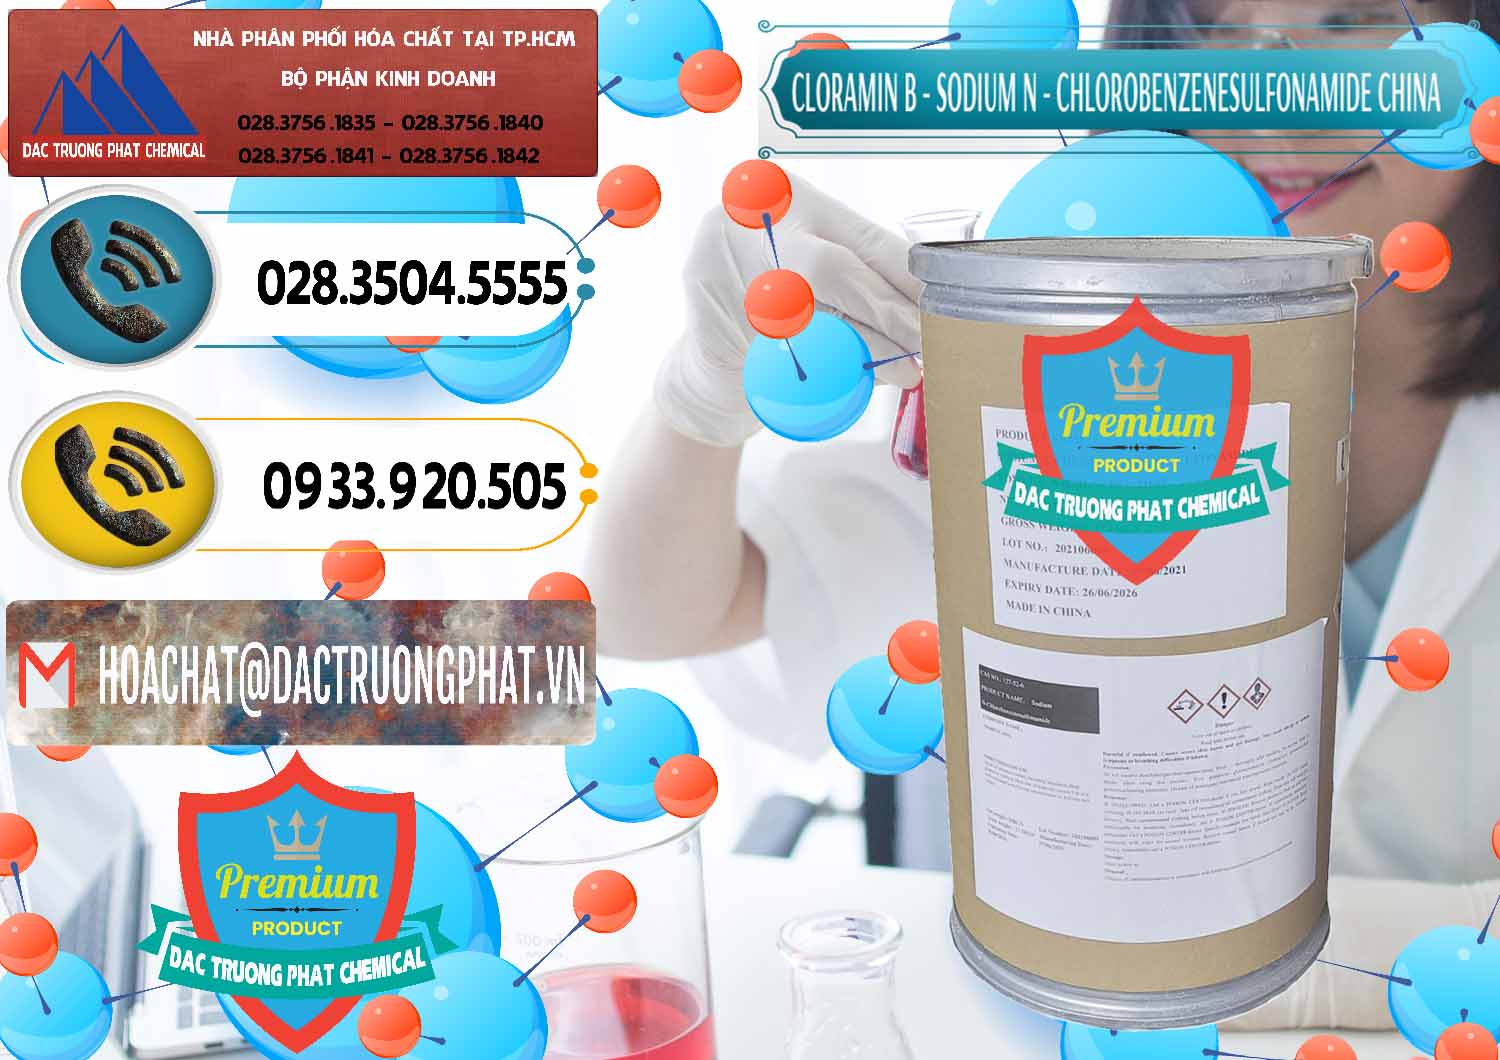 Nơi chuyên bán ( cung cấp ) Cloramin B Khử Trùng, Diệt Khuẩn Trung Quốc China - 0298 - Nơi chuyên bán & phân phối hóa chất tại TP.HCM - hoachatdetnhuom.vn